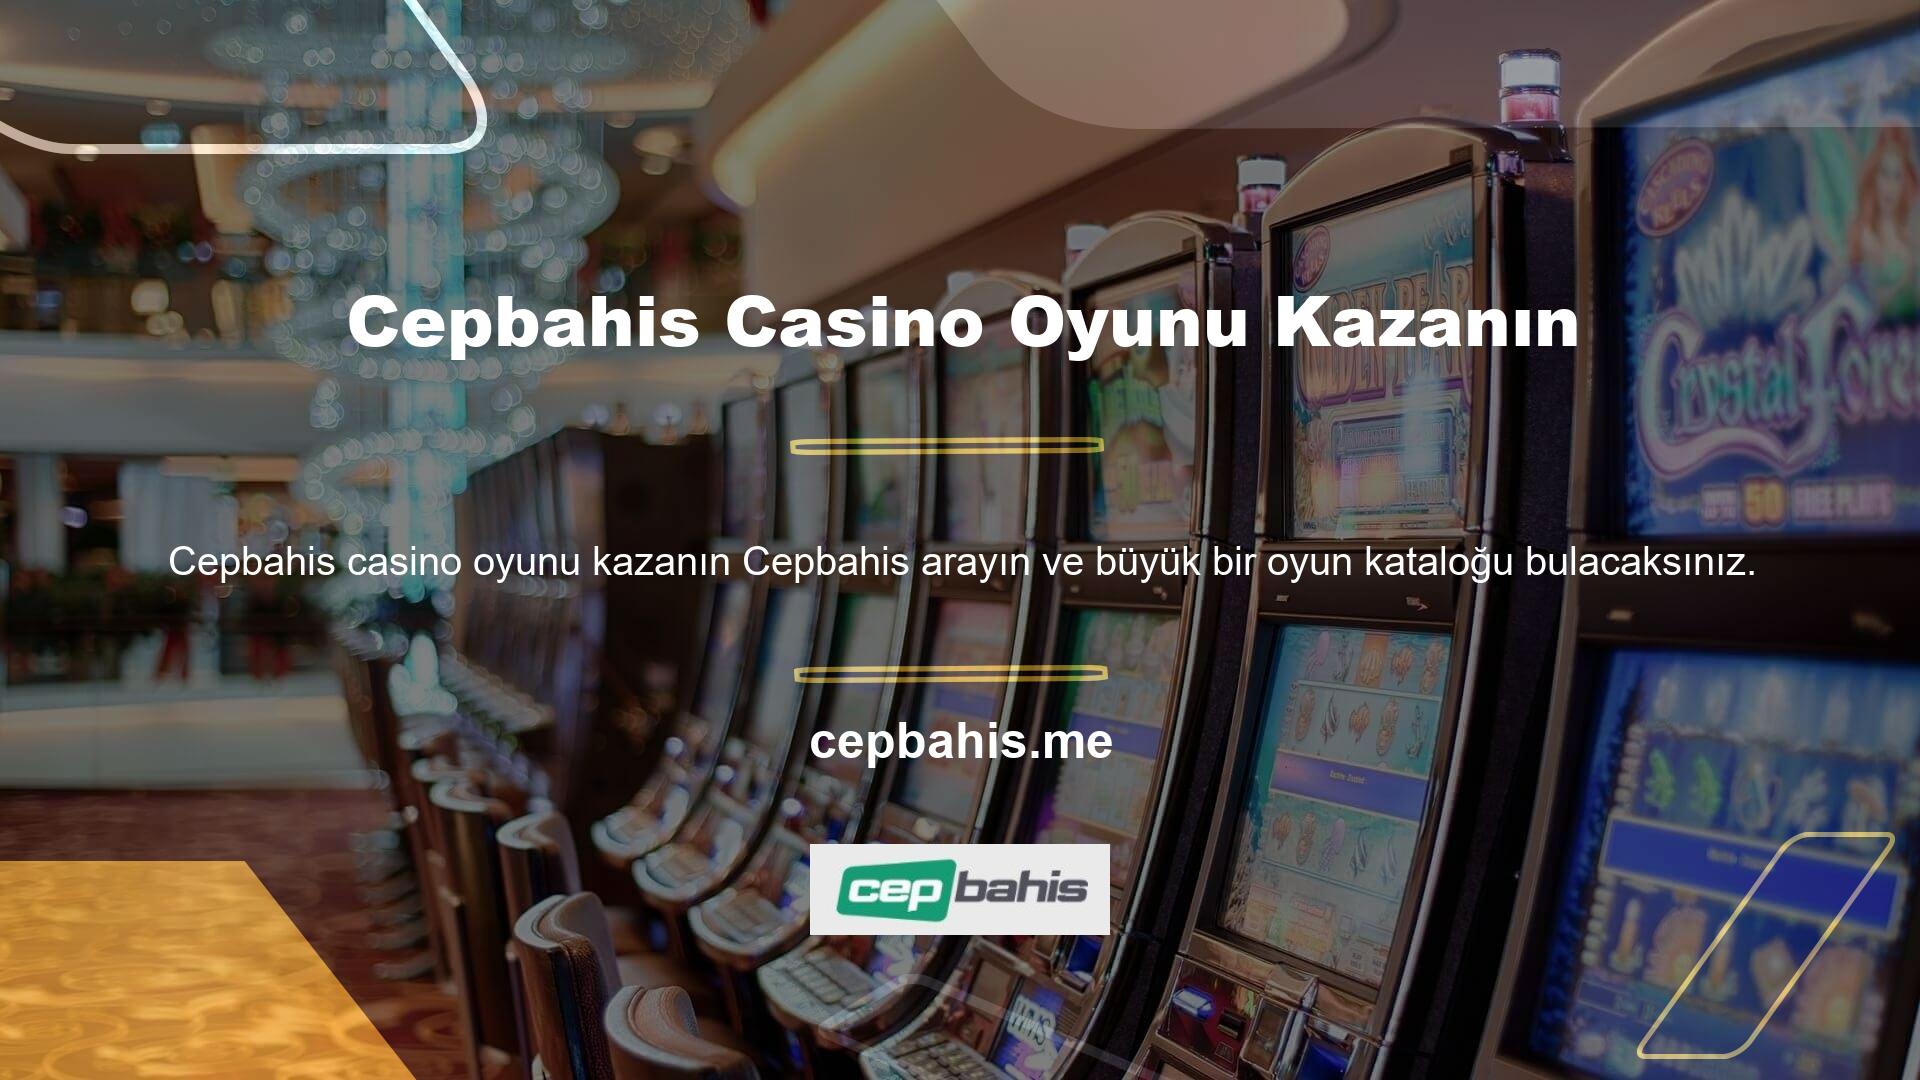 Canlı casino hizmetlerine özel olarak tasarlanmış pek çok alternatif bulunmaktadır